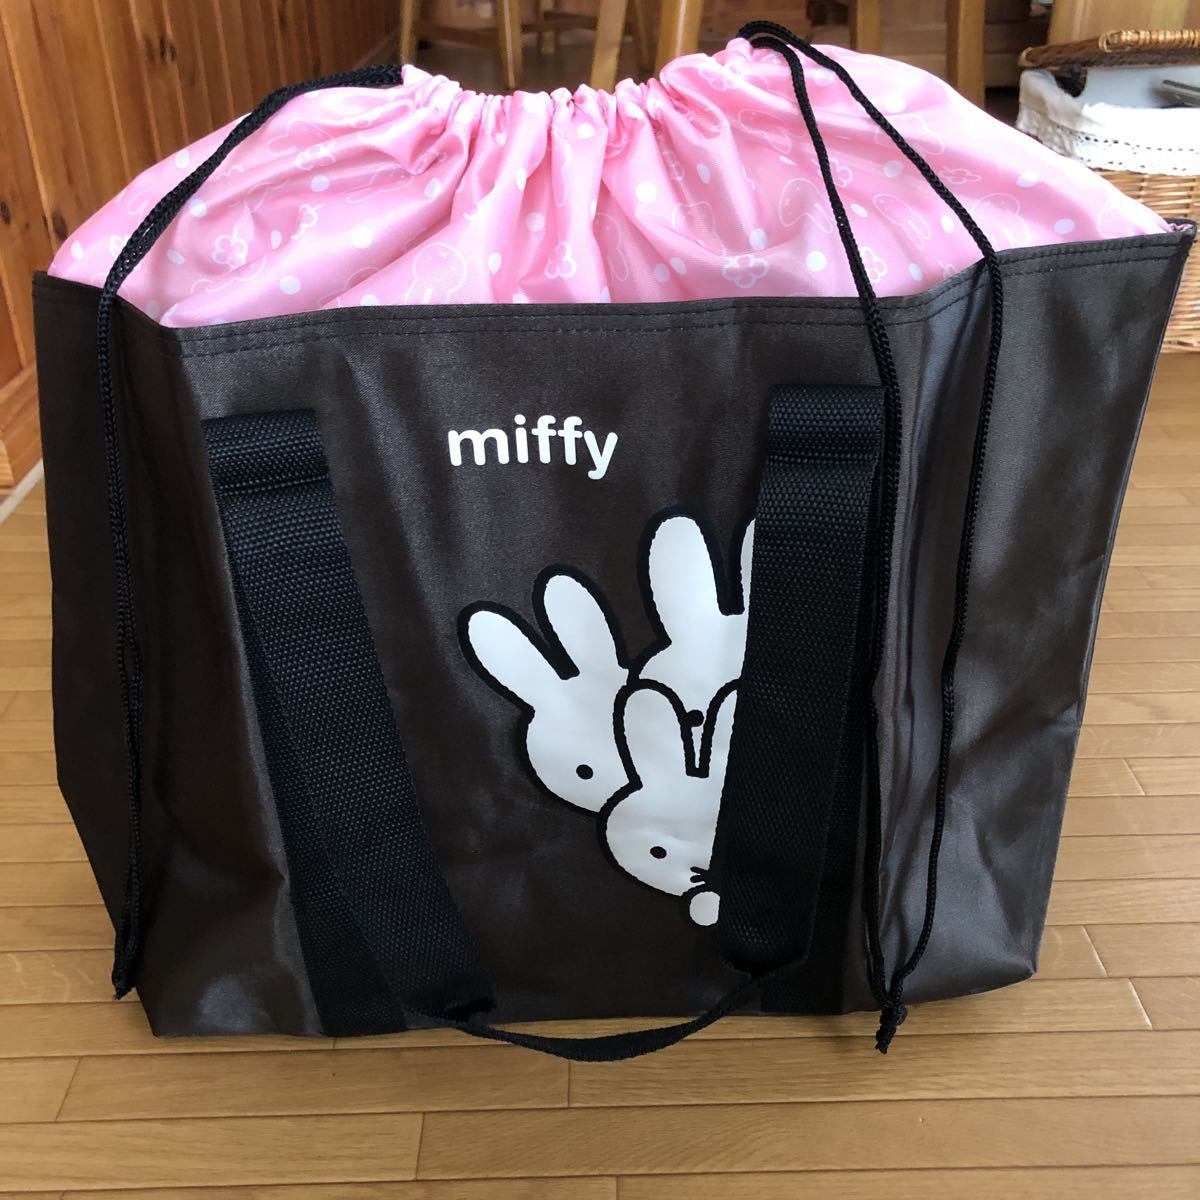  новый товар Miffy большая сумка довольно большой 3 шт. комплект покупки газета бумага хранение задний тоже изрядно удобный 